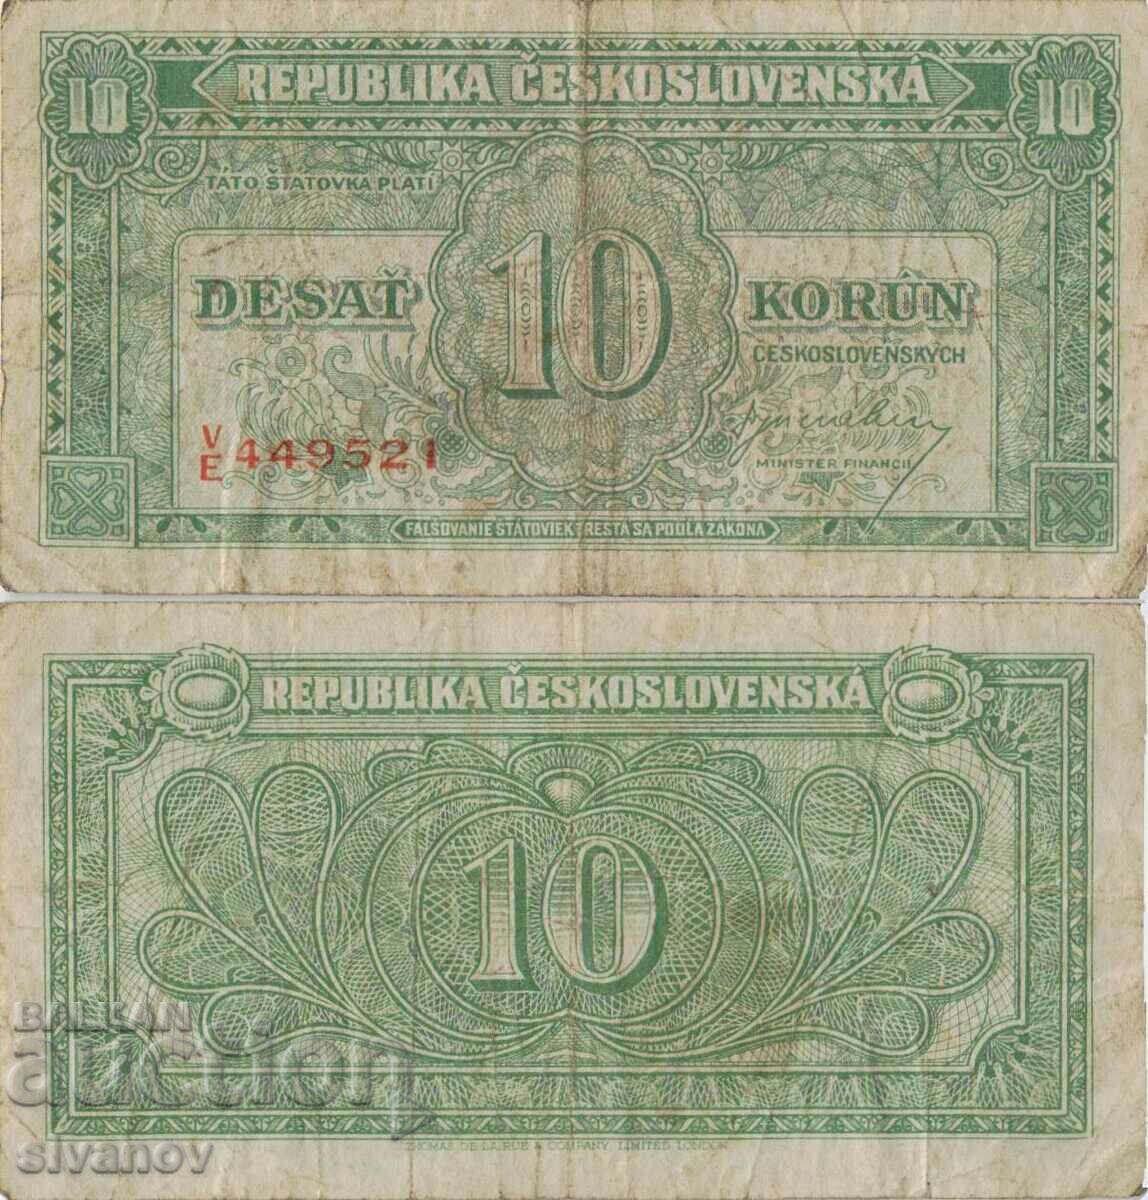 Czechoslovakia 10 kroner 1945 banknote #5226